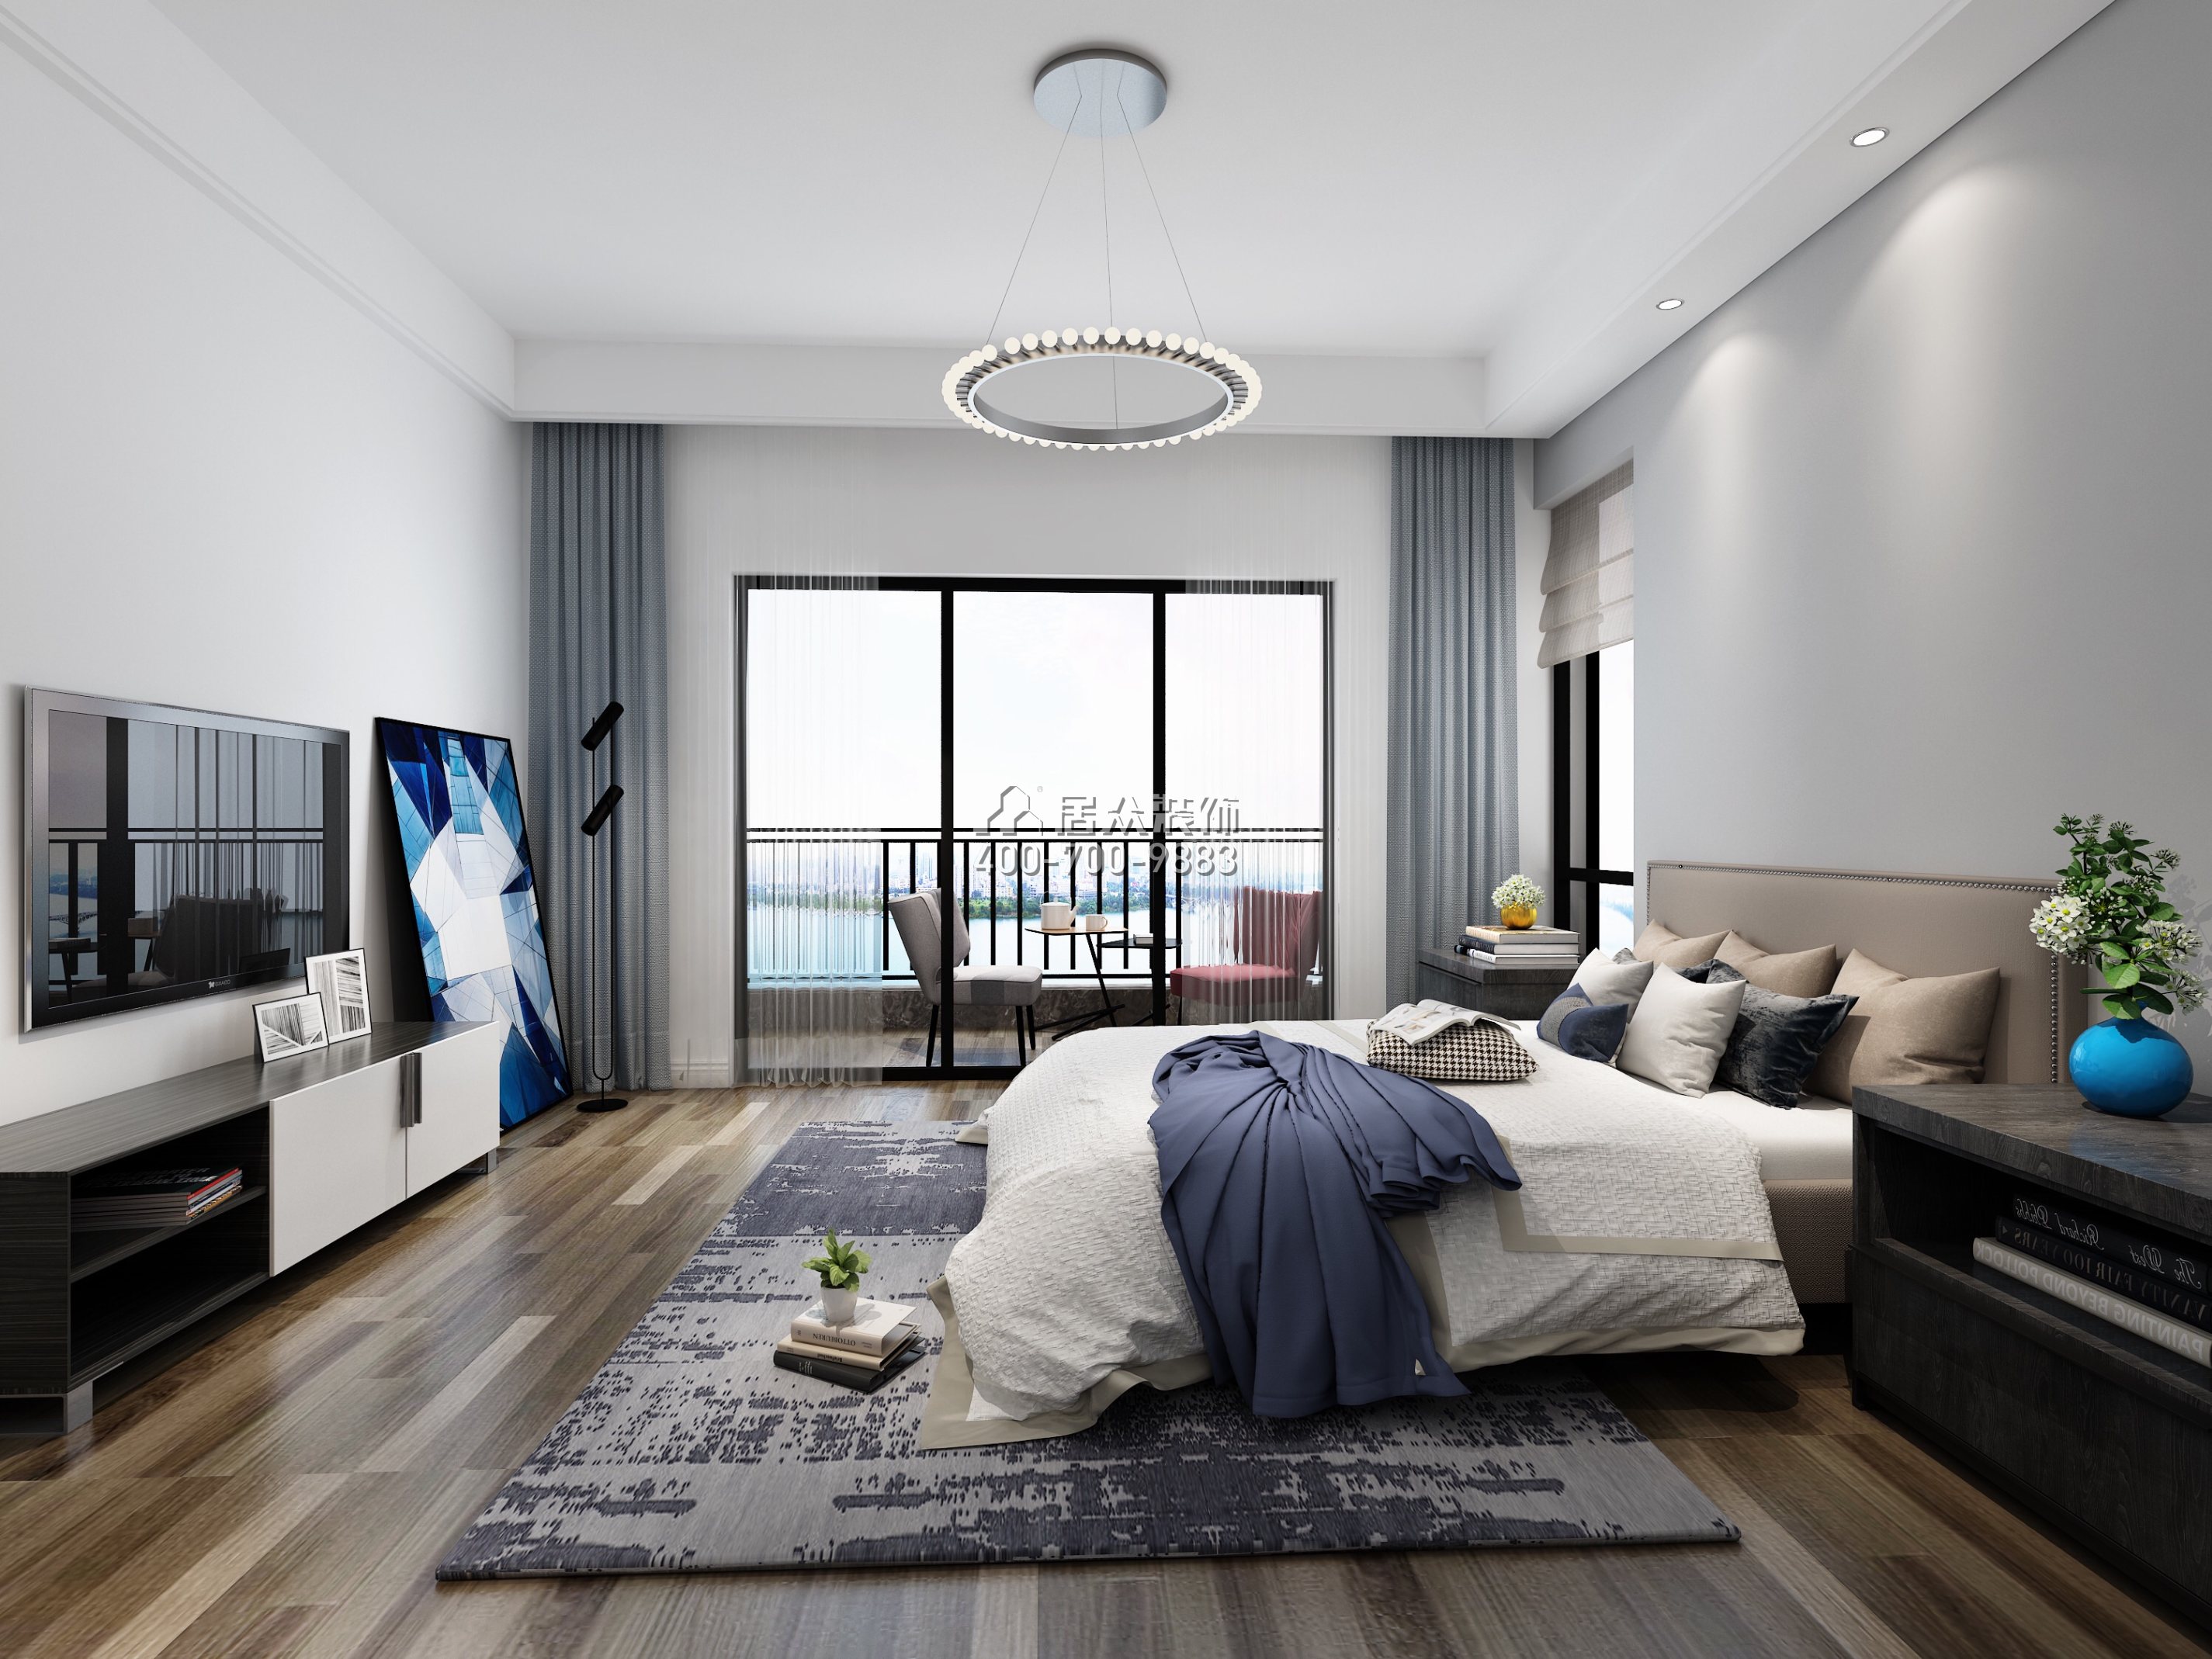 华发峰景湾216平方米北欧风格平层户型卧室装修效果图